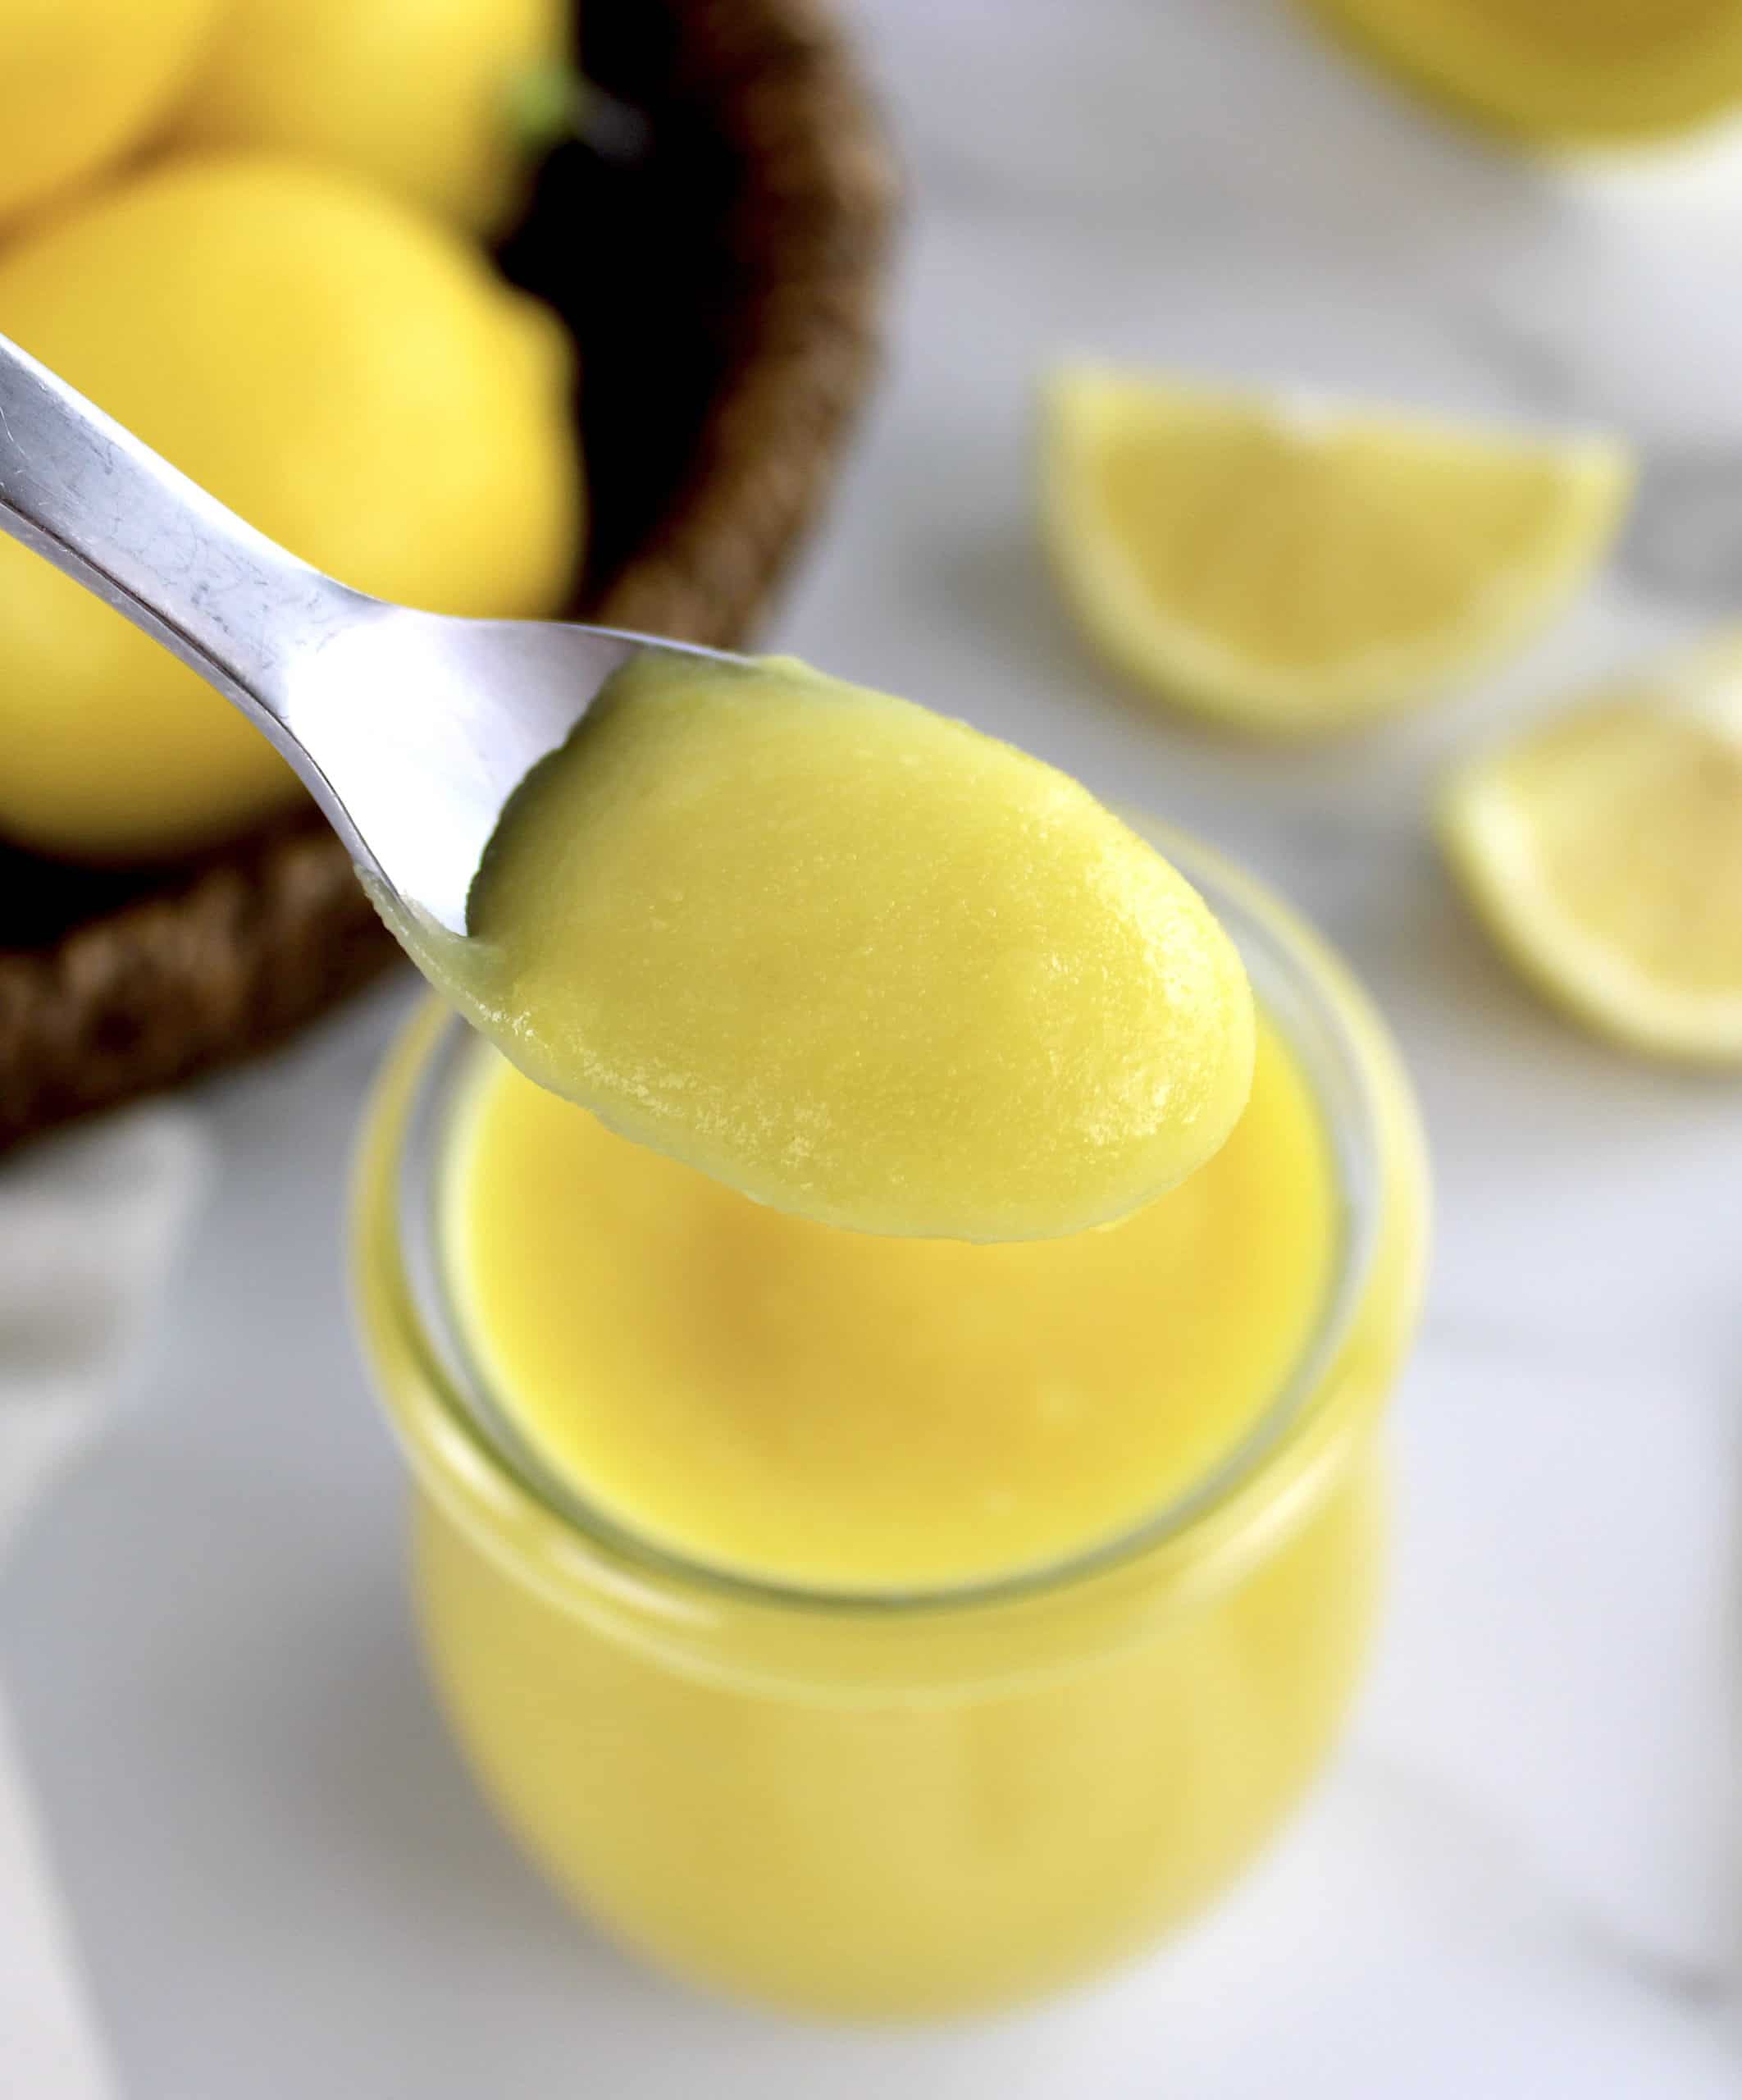 5 Minute Keto Lemon Curd in spoon held up over glass jar